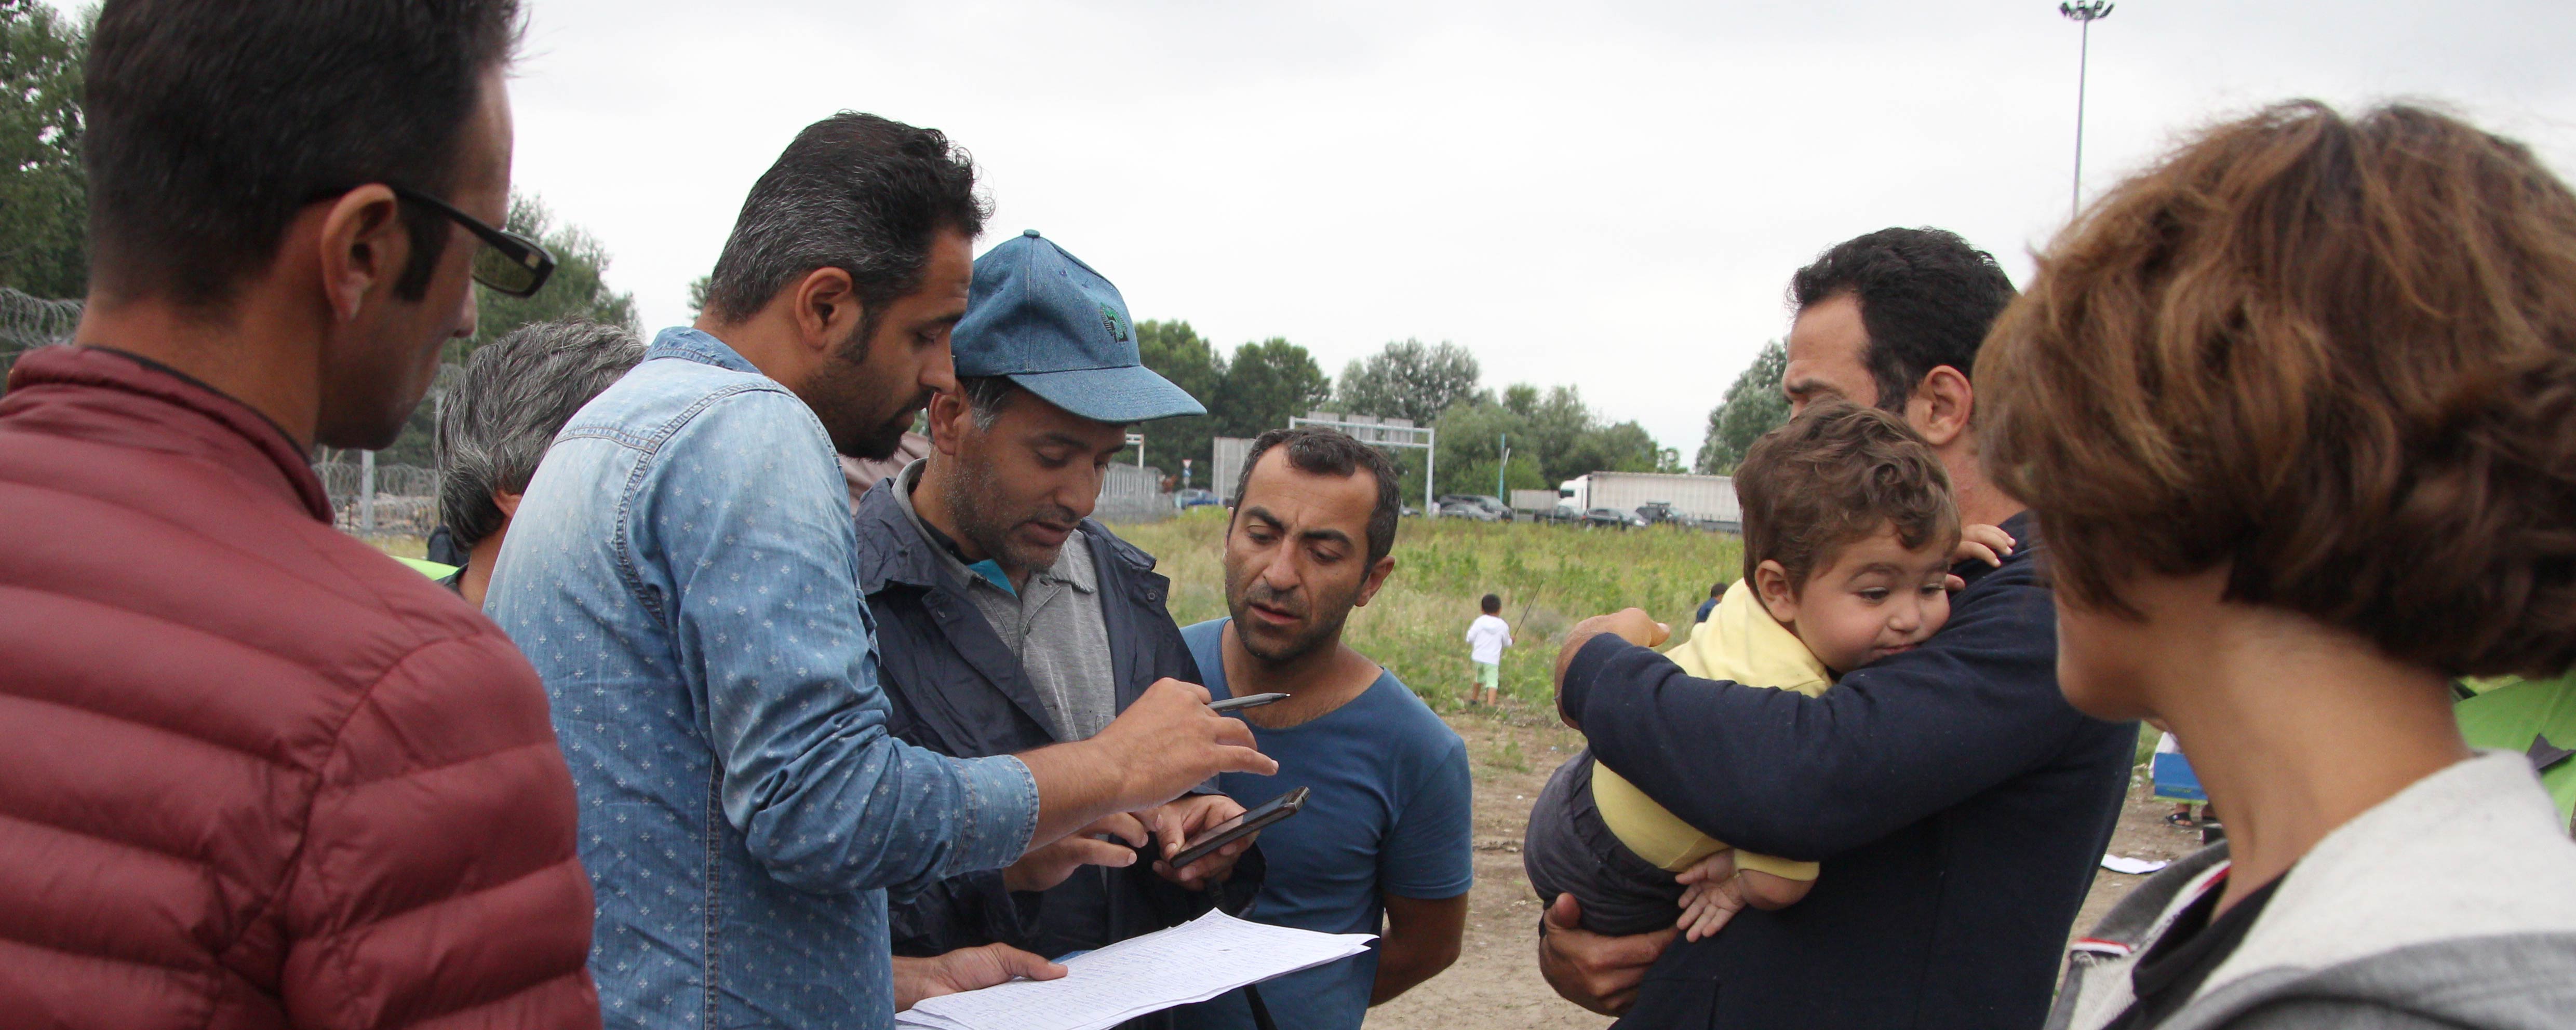 Egy önkéntes is tanul abból, ha a menekülteknek segít